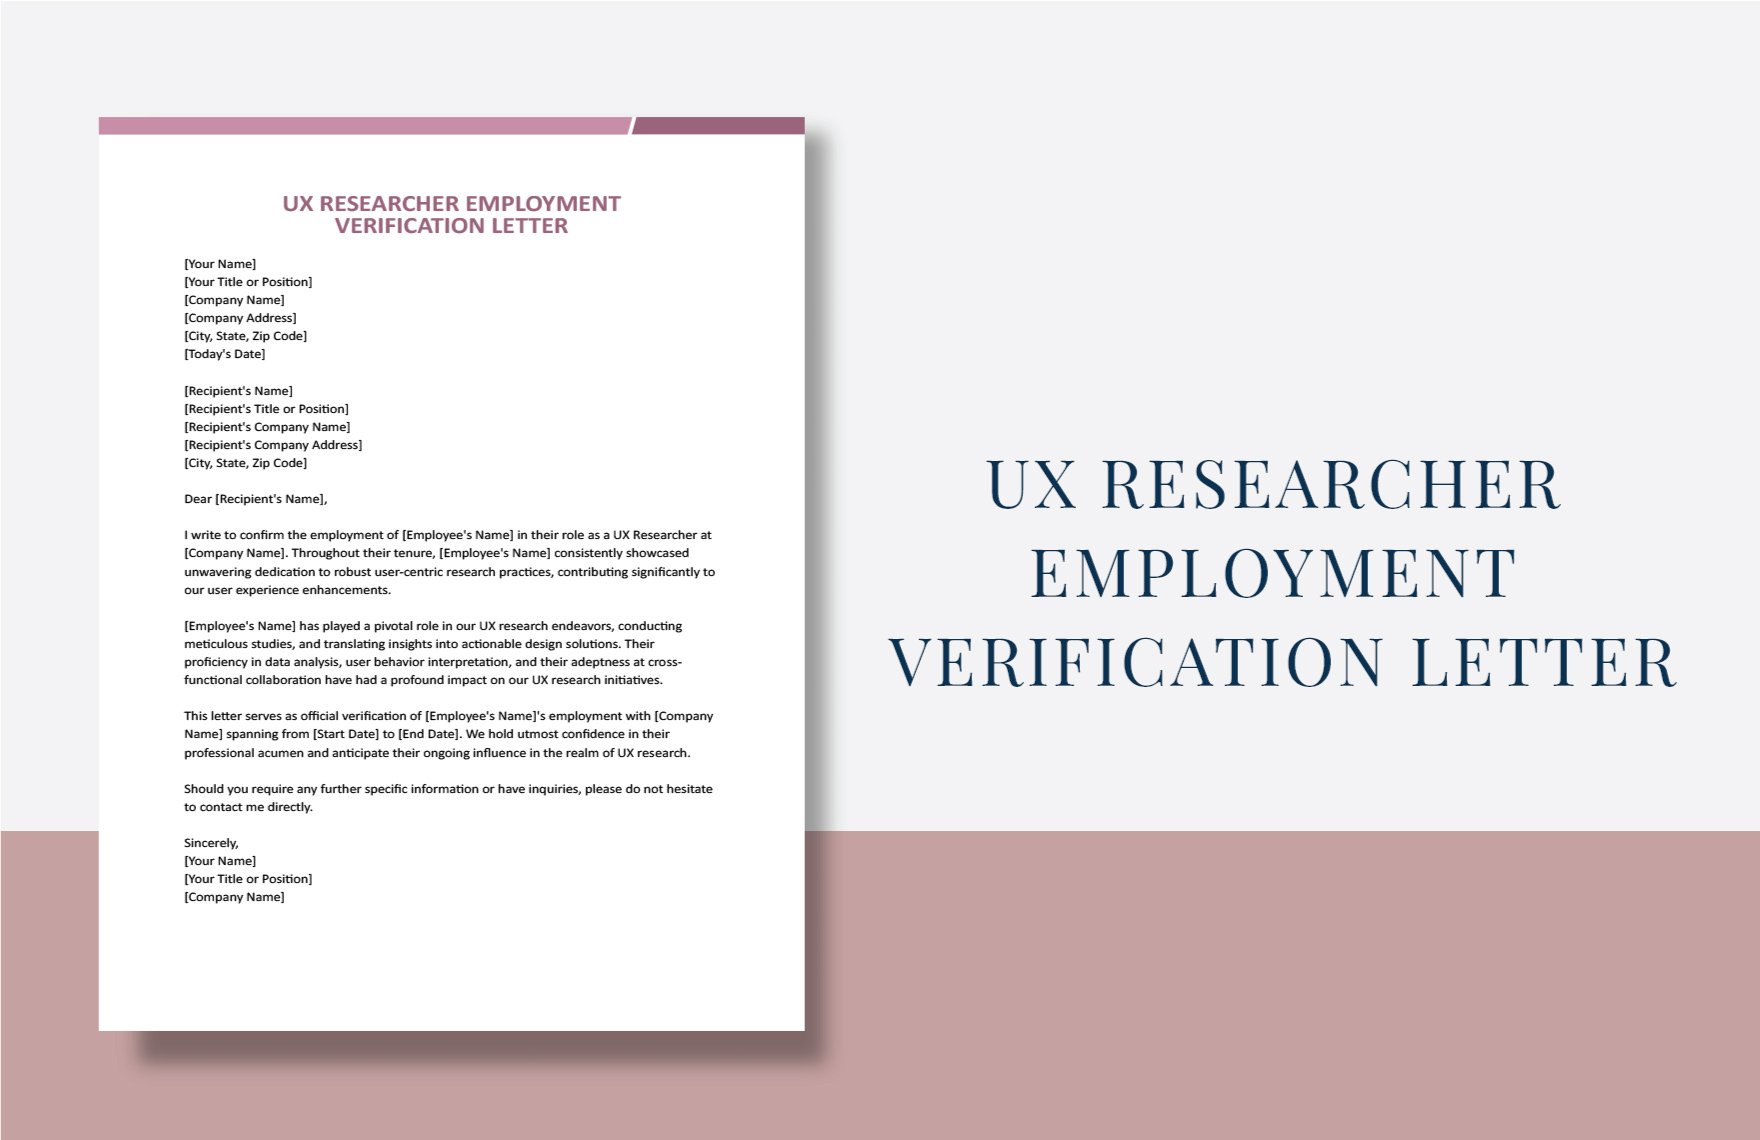 UX Researcher Employment Verification Letter